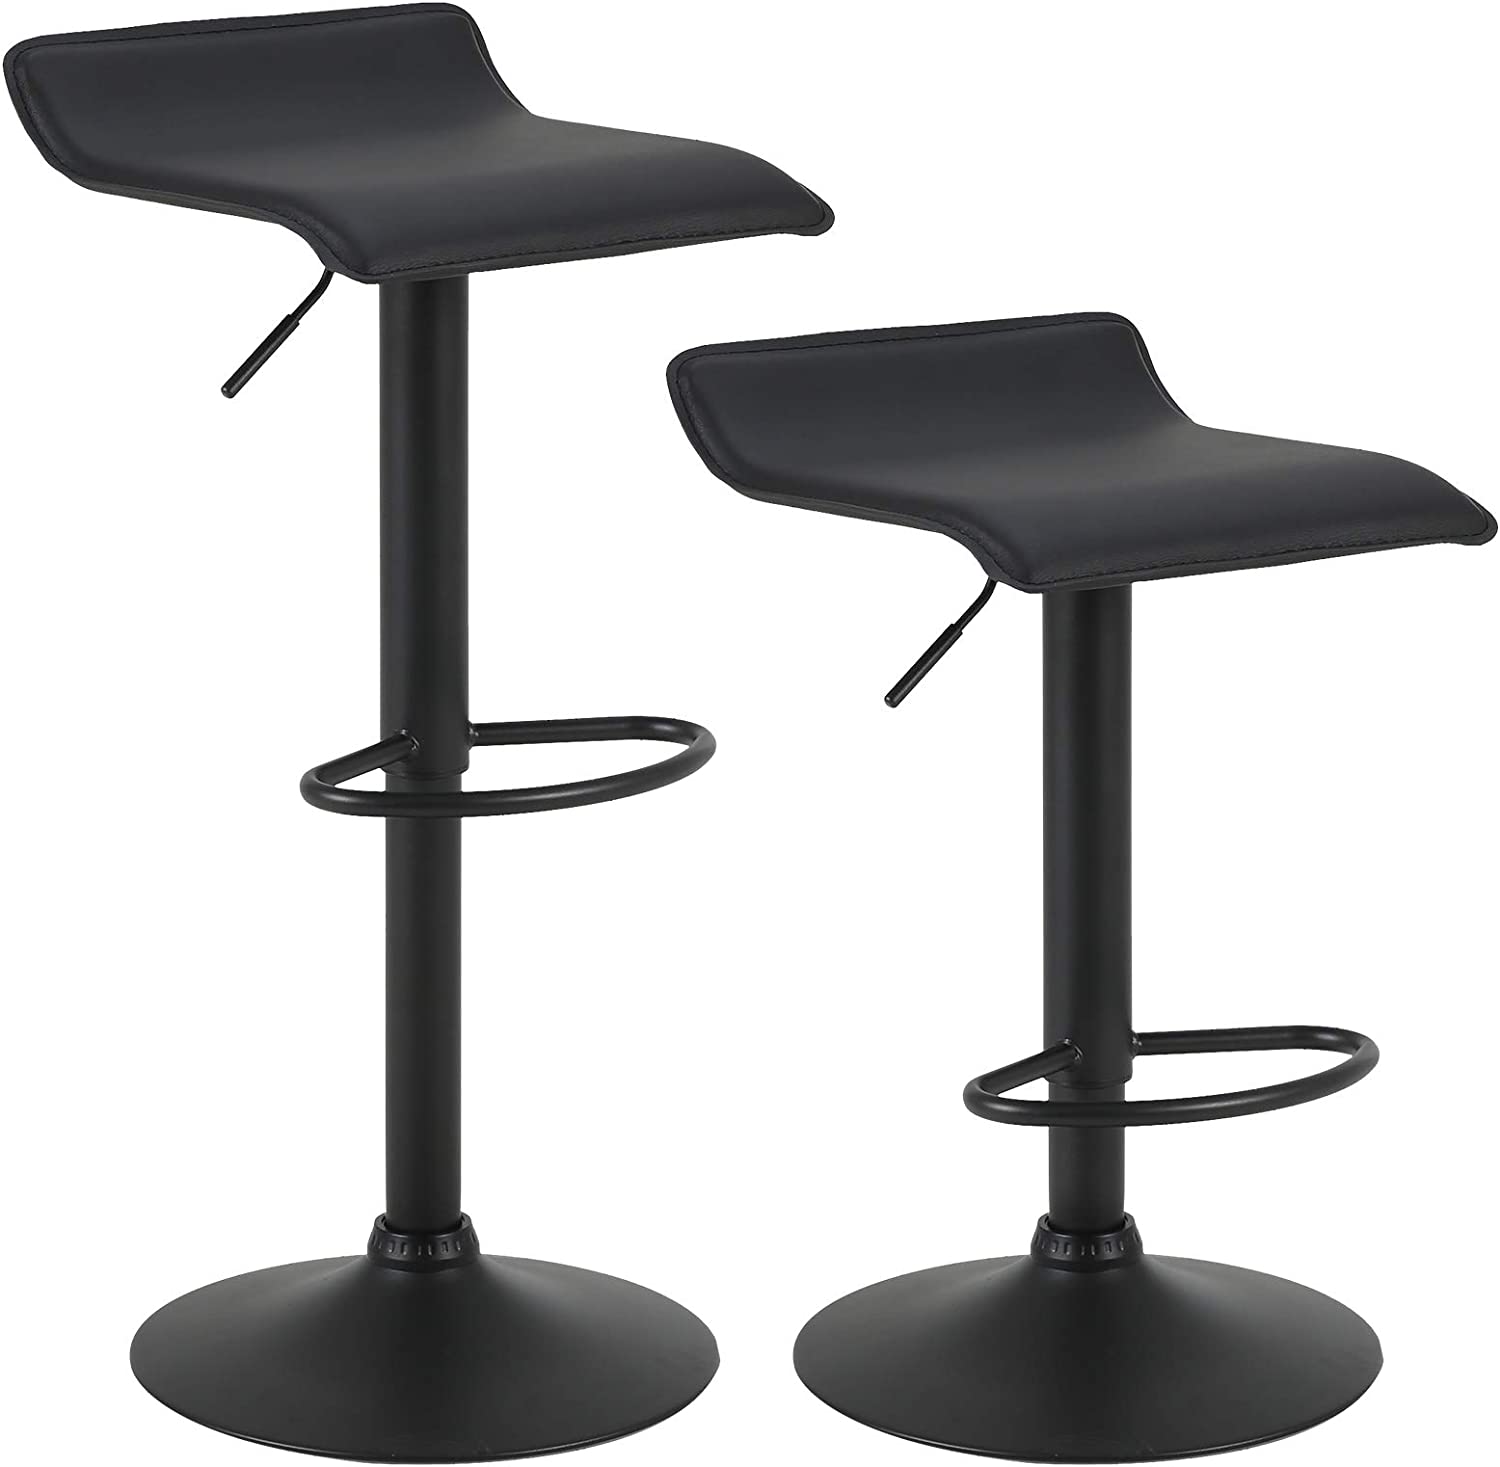  ZWLI Taburete alto para comedor, silla de mostrador de piel  sintética negra, silla de bar de desayuno con patas de metal y respaldo  para isla de cocina/bar en casa, 21.7 in